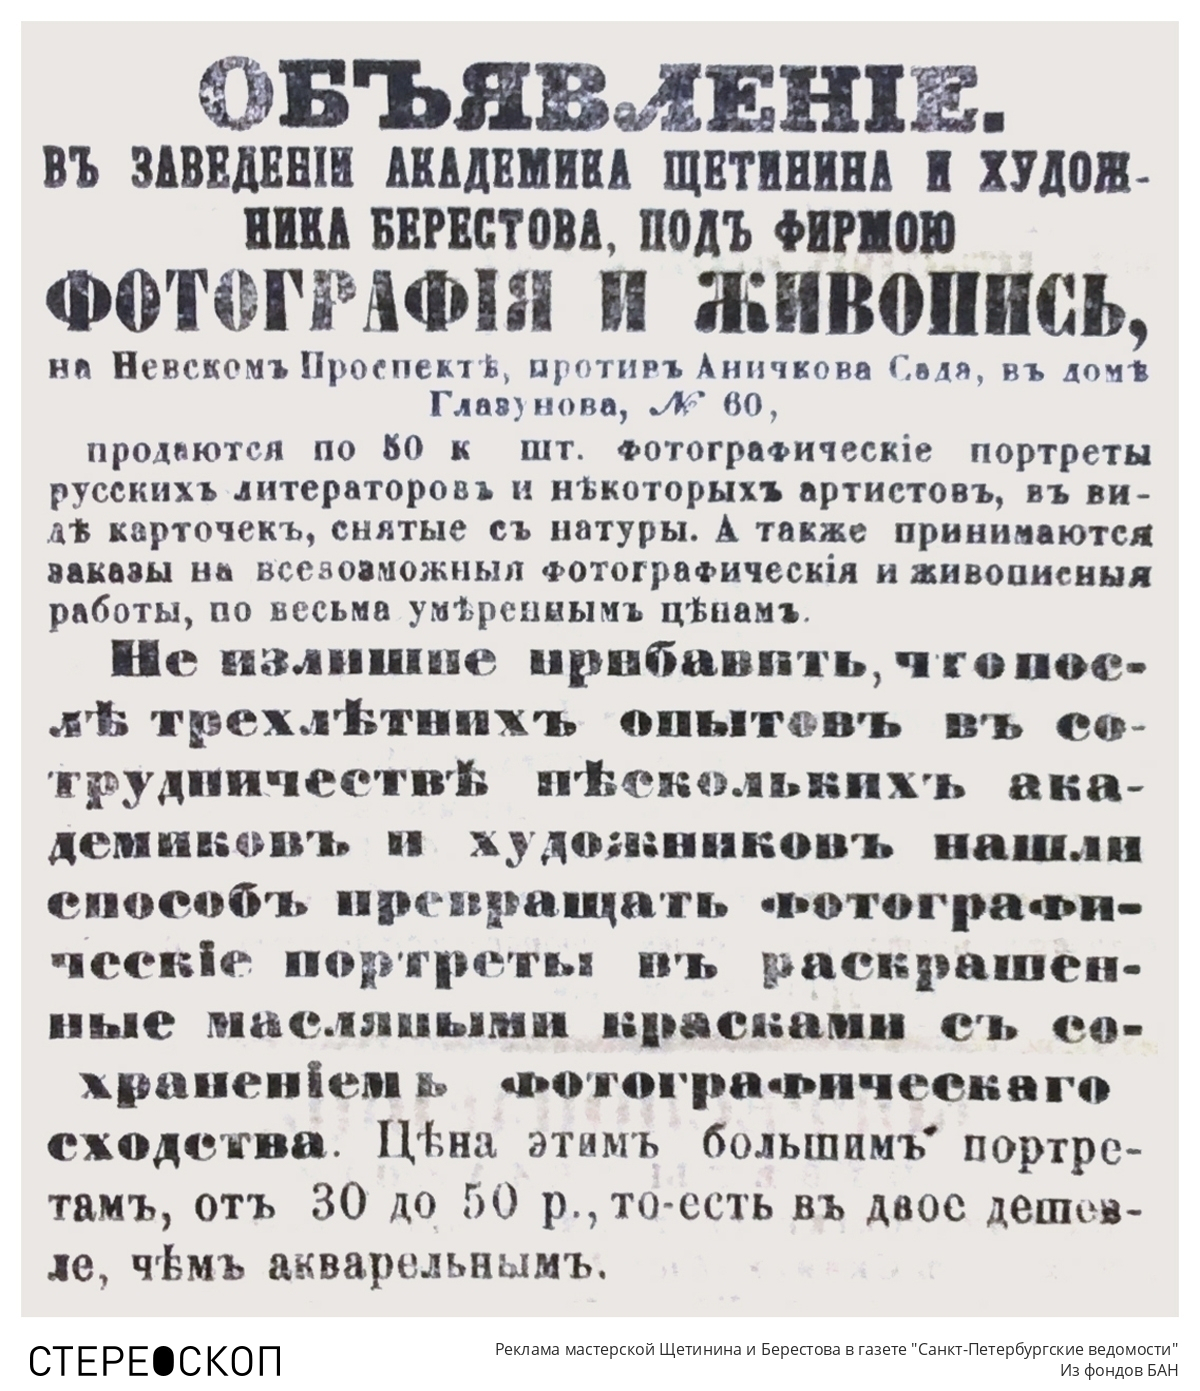 Реклама мастерской Щетинина и Берестова в газете "Санкт-Петербургские ведомости"